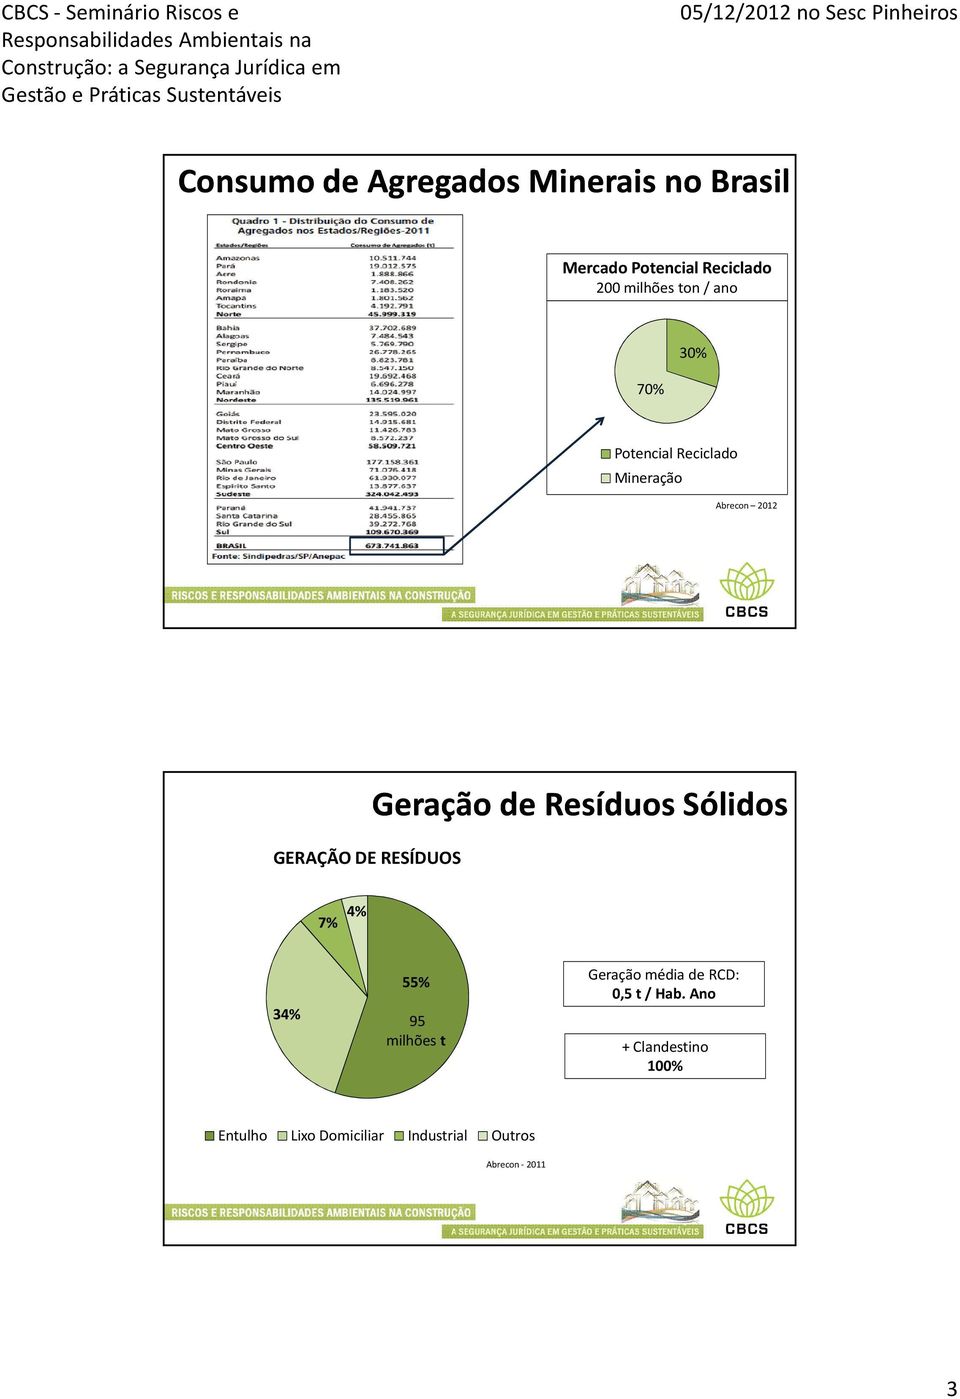 Geração de Resíduos Sólidos 7% 4% 34% 55% 95 milhões t Geração média de RCD: 0,5 t